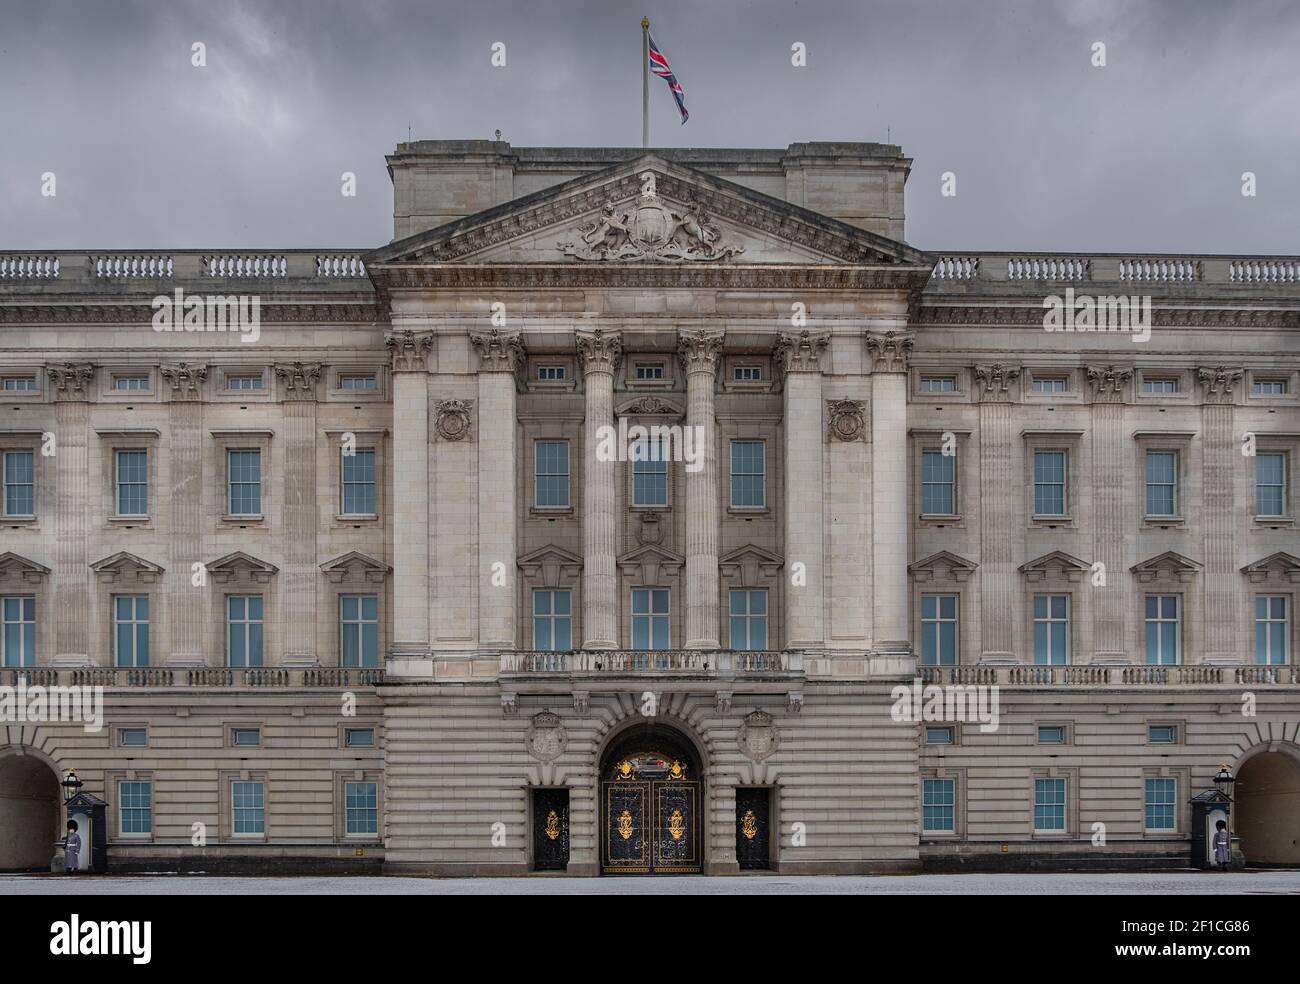 Europa, Regno Unito, Inghilterra, Londra - la facciata di Buckingham Palace, residenza ufficiale della Regina a Londra Foto Stock